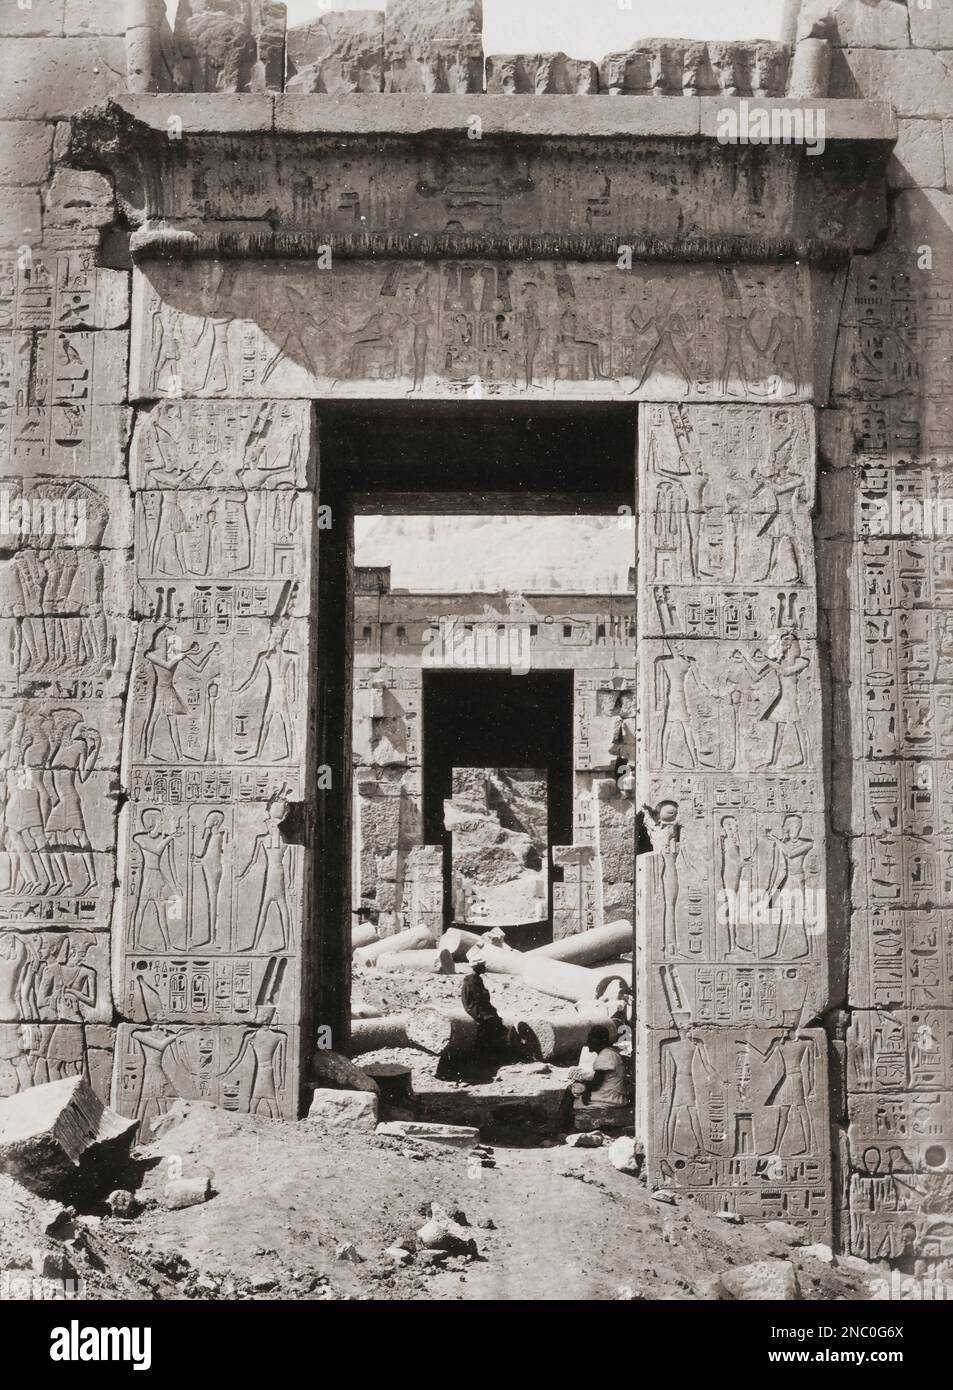 Pylon, oder monumentales Tor, am archäologischen Komplex Medinet Habu in der Nähe von Luxor, Ägypten. Nach einem Foto aus der Mitte des 19. Jahrhunderts vom englischen Fotografen Francis Frith. Stockfoto